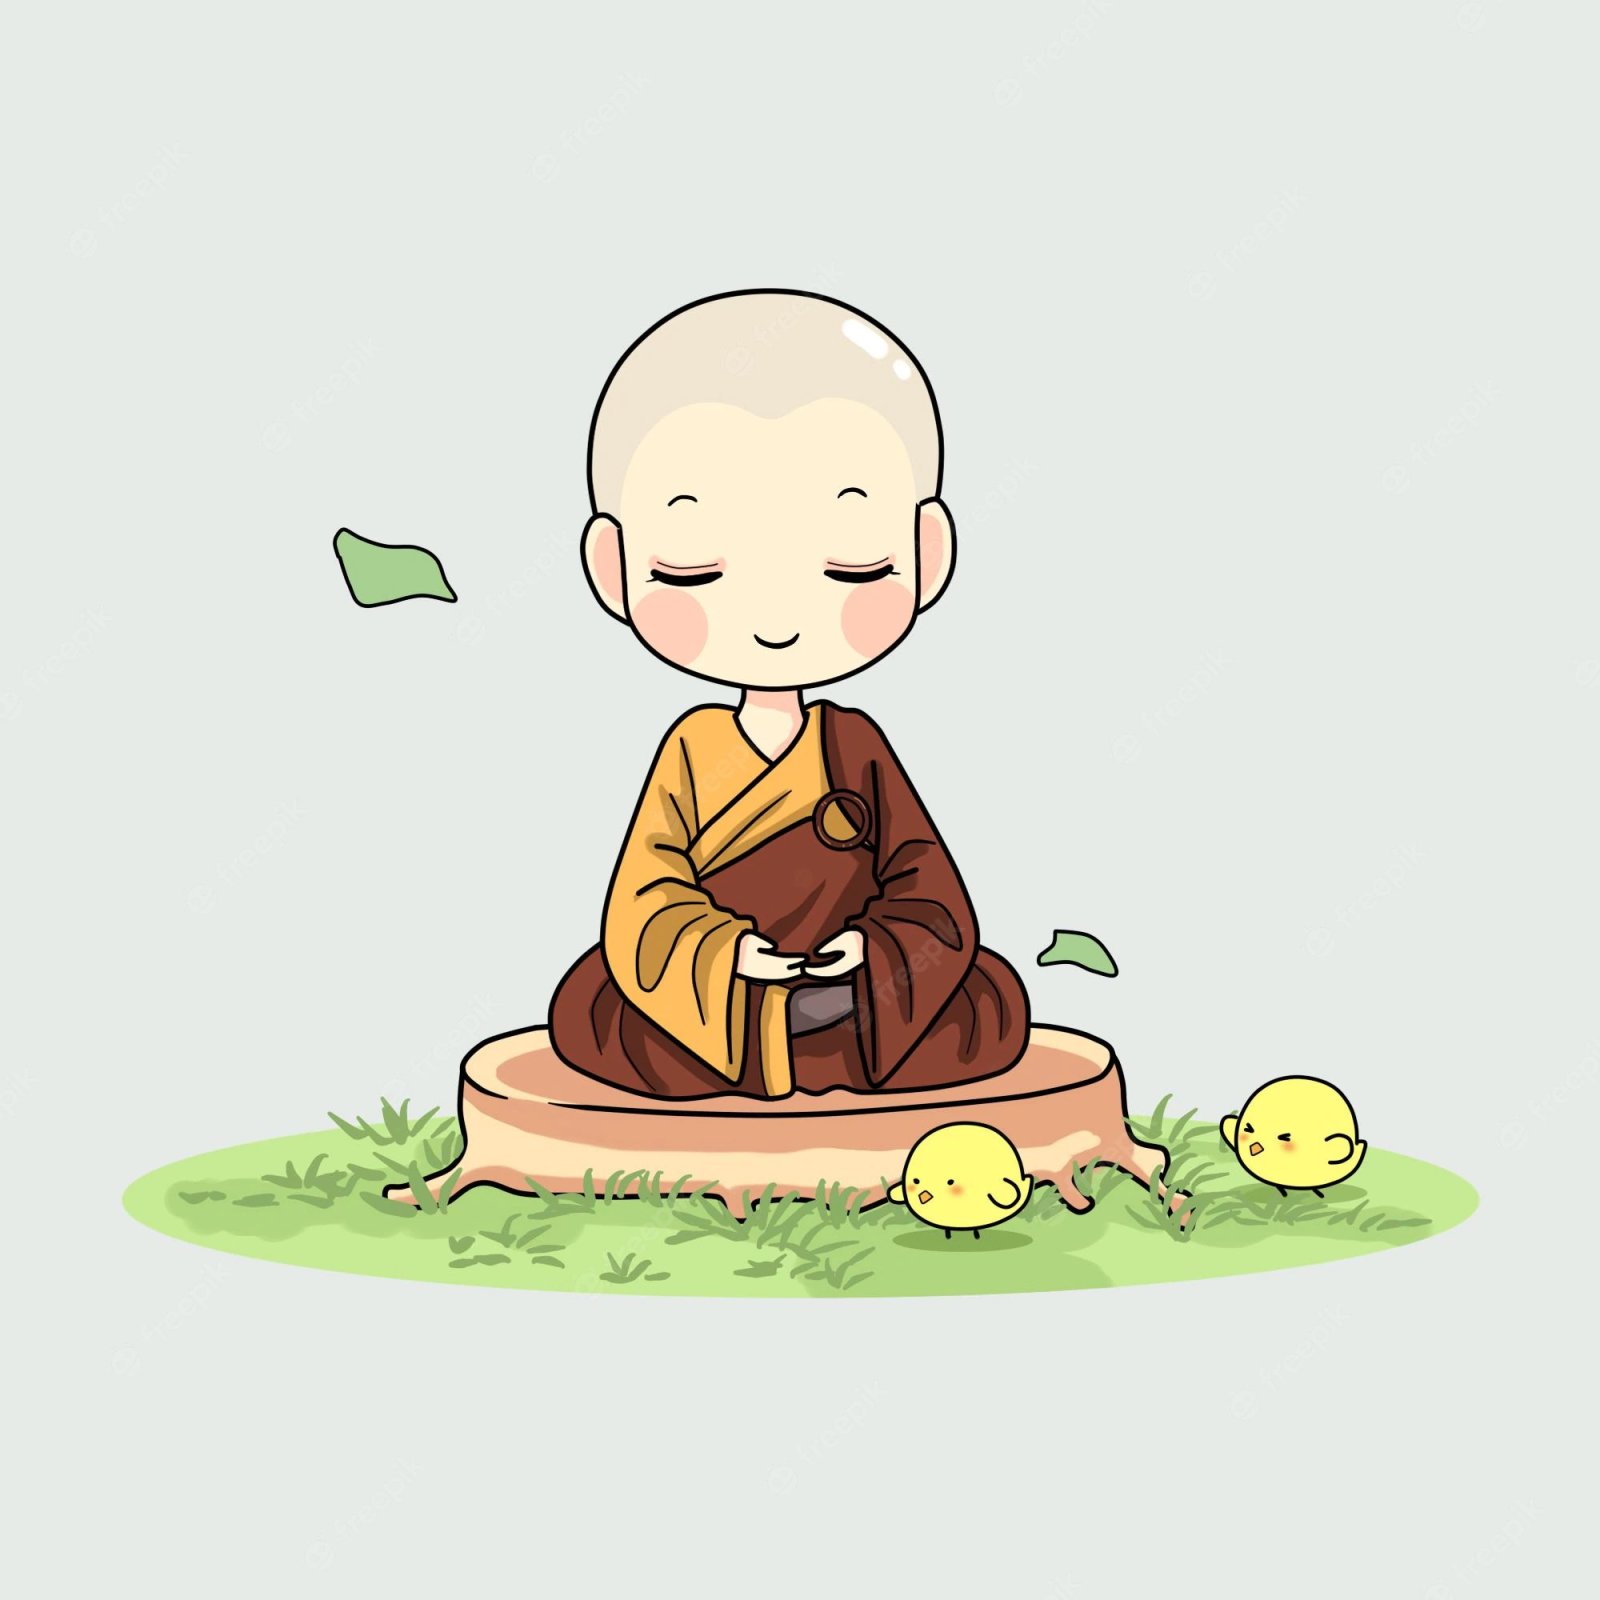 cute-monk-meditating-art-illustration_484020-31.jpg